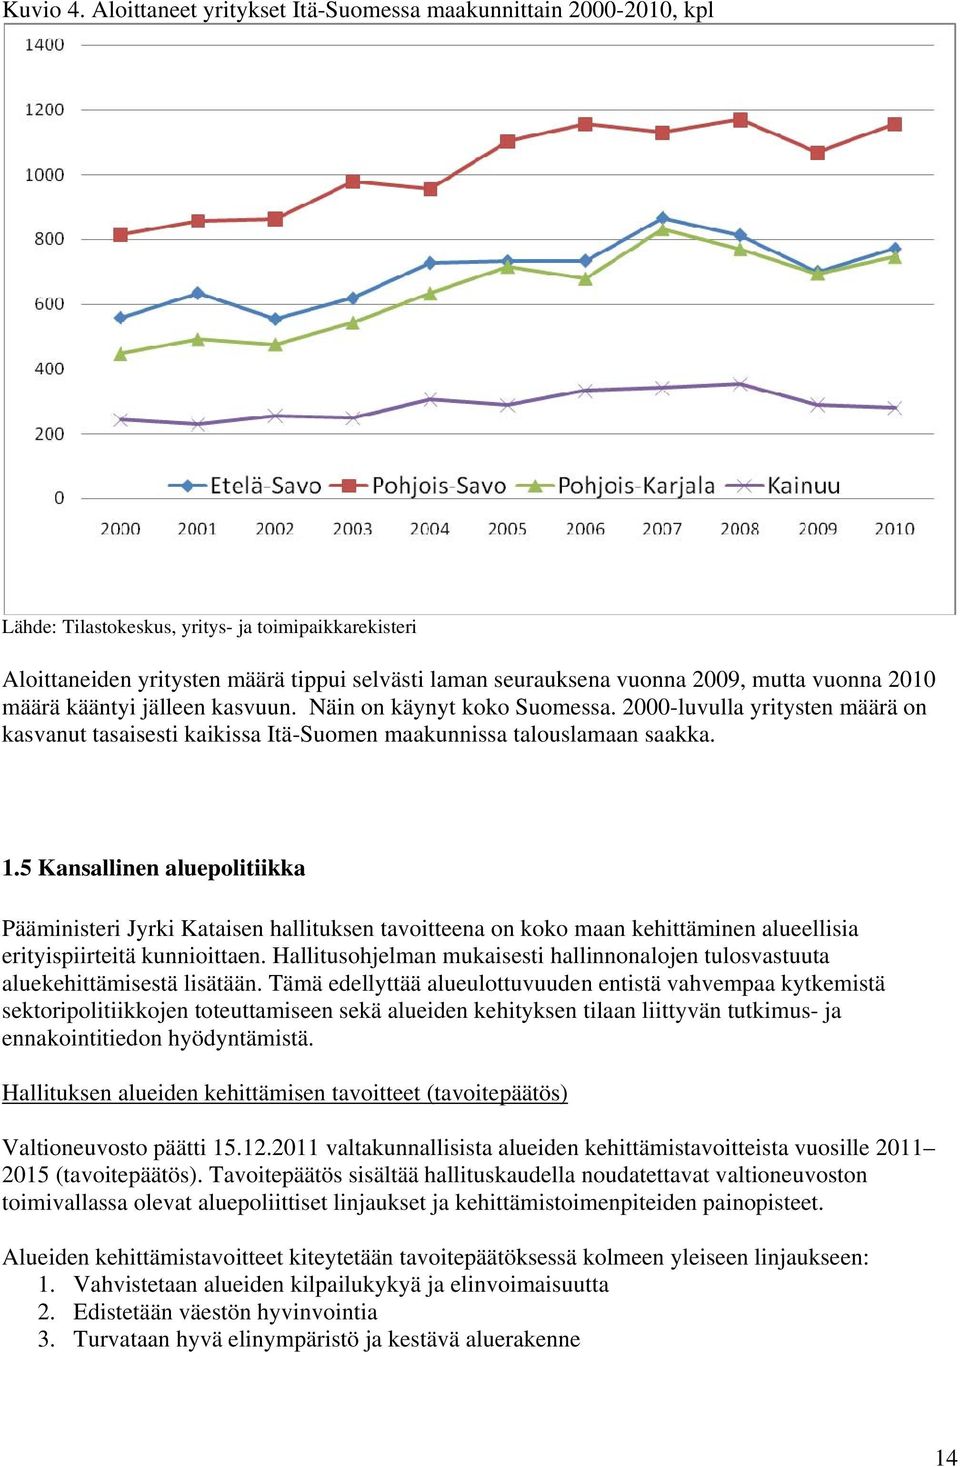 mutta vuonna 2010 määrä kääntyi jälleen kasvuun. Näin on käynyt koko Suomessa. 2000-luvulla yritysten määrä on kasvanut tasaisesti kaikissa Itä-Suomen maakunnissa talouslamaan saakka. 1.